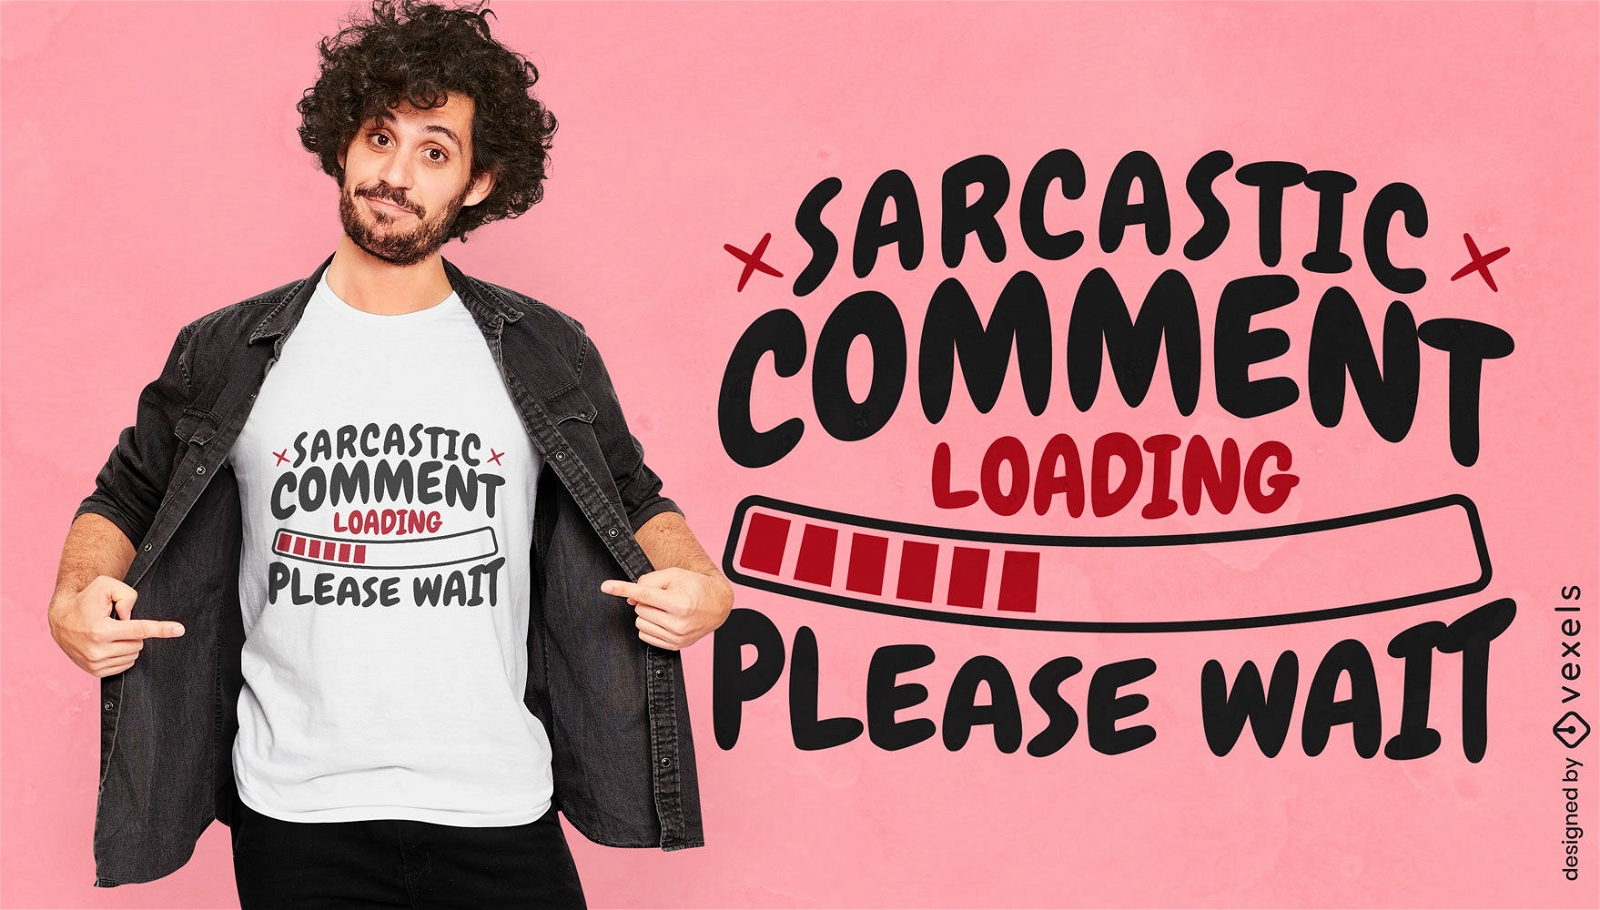 Diseño de camiseta de cita de comentario sarcástico